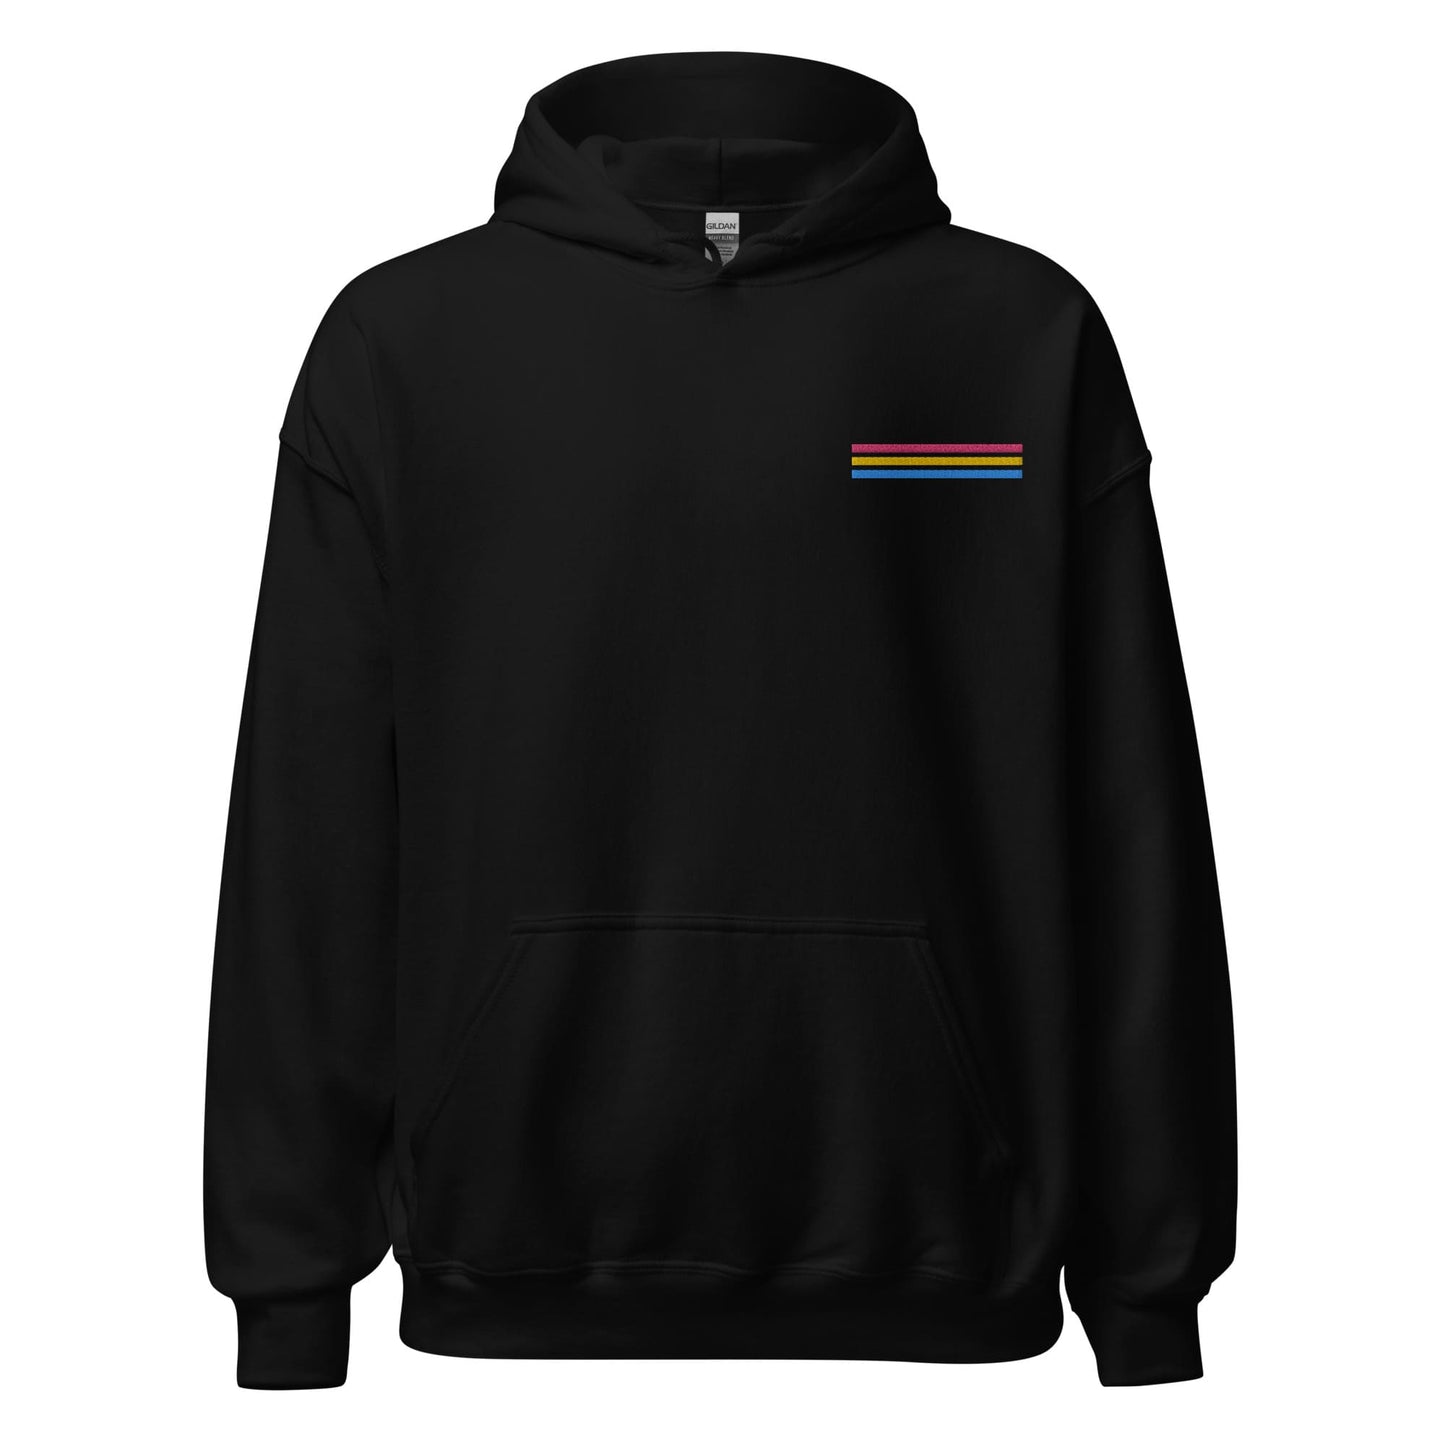 pansexual hoodie, subtle pan pride flag embroidered pocket design hooded sweatshirt, hang